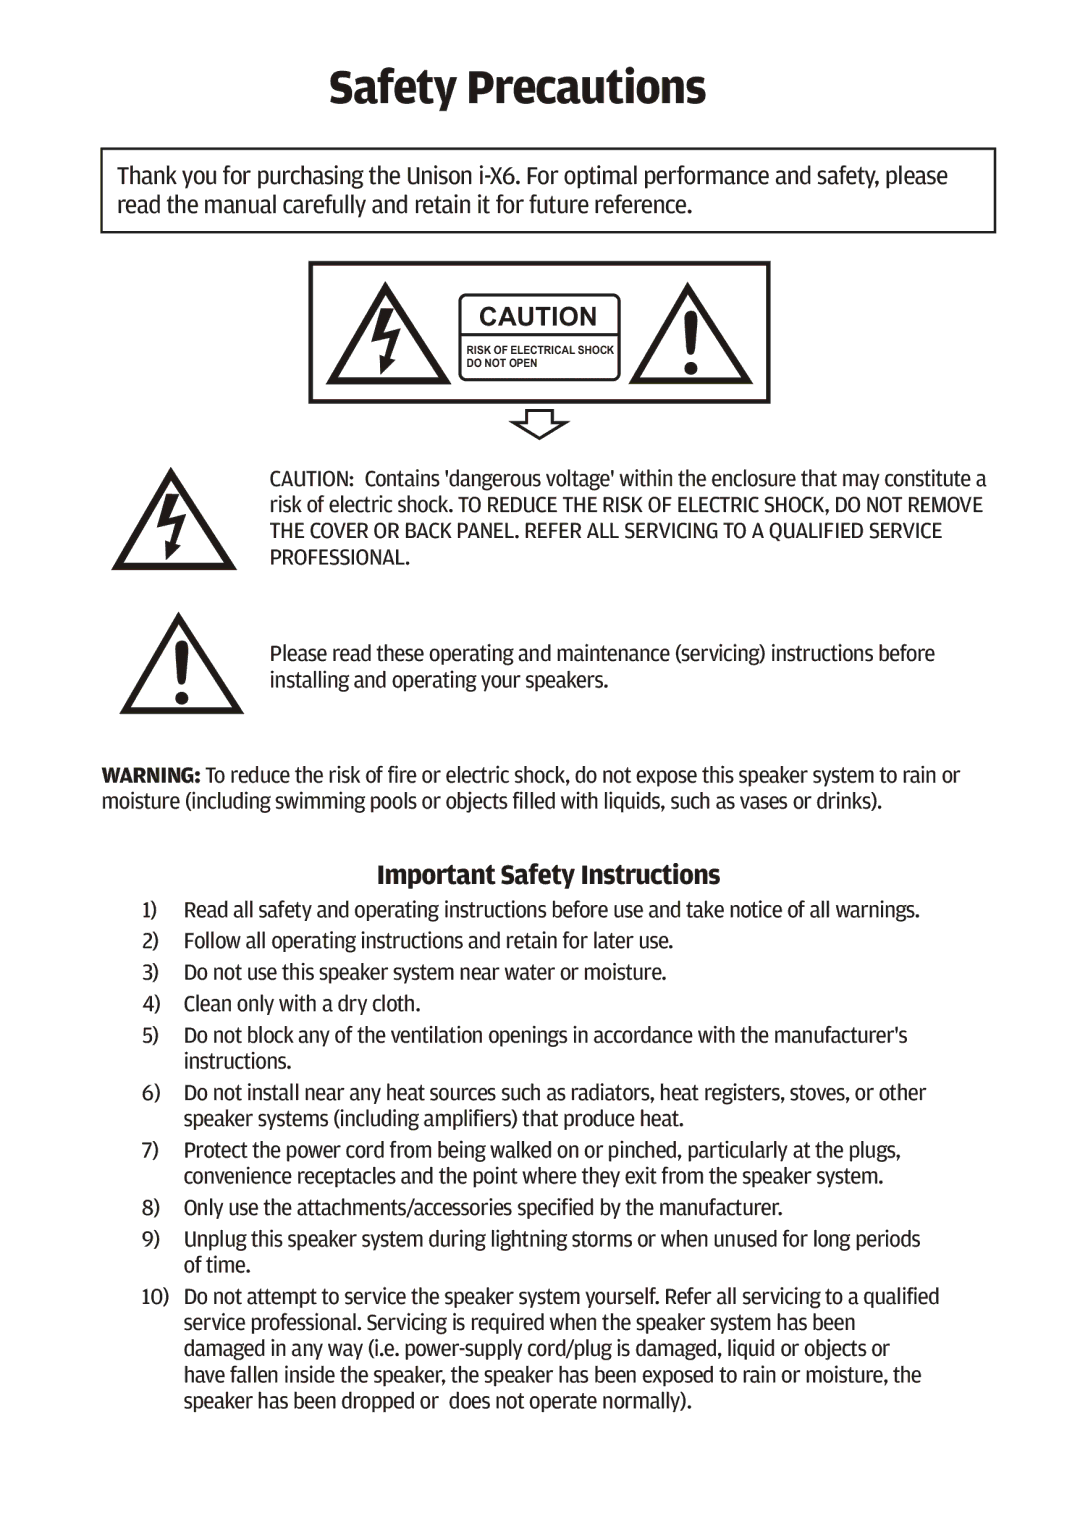 Cygnett i-x6 manual Safety Precautions 